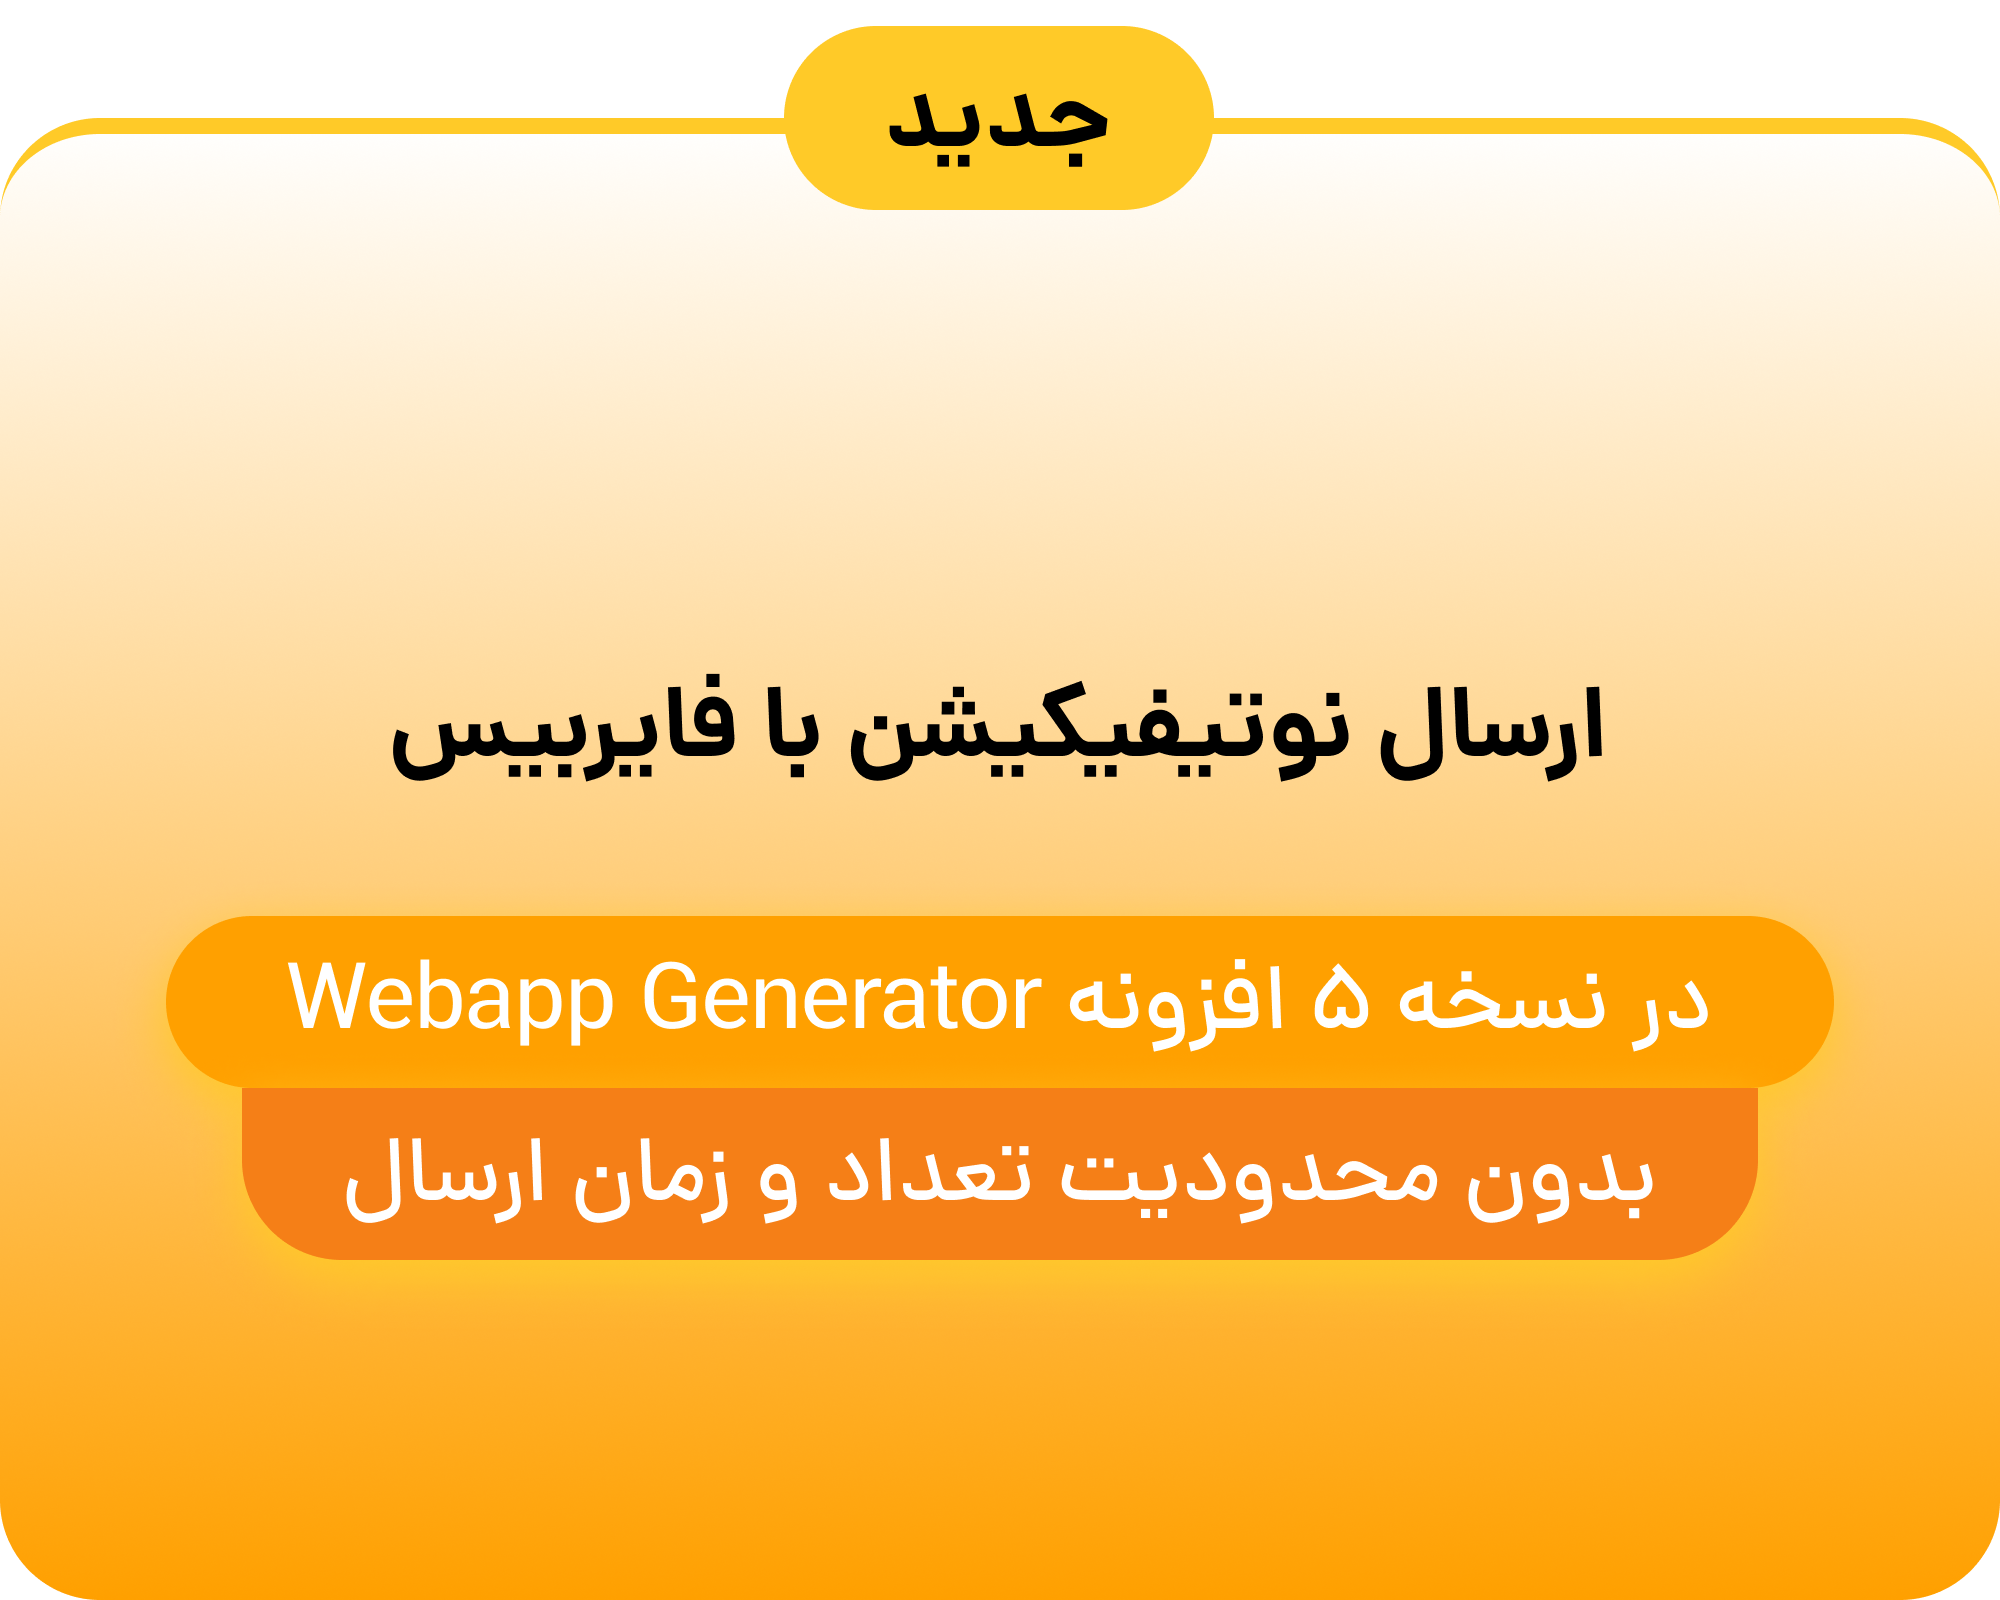 امکانات جدید در افزونه Webapp Generator